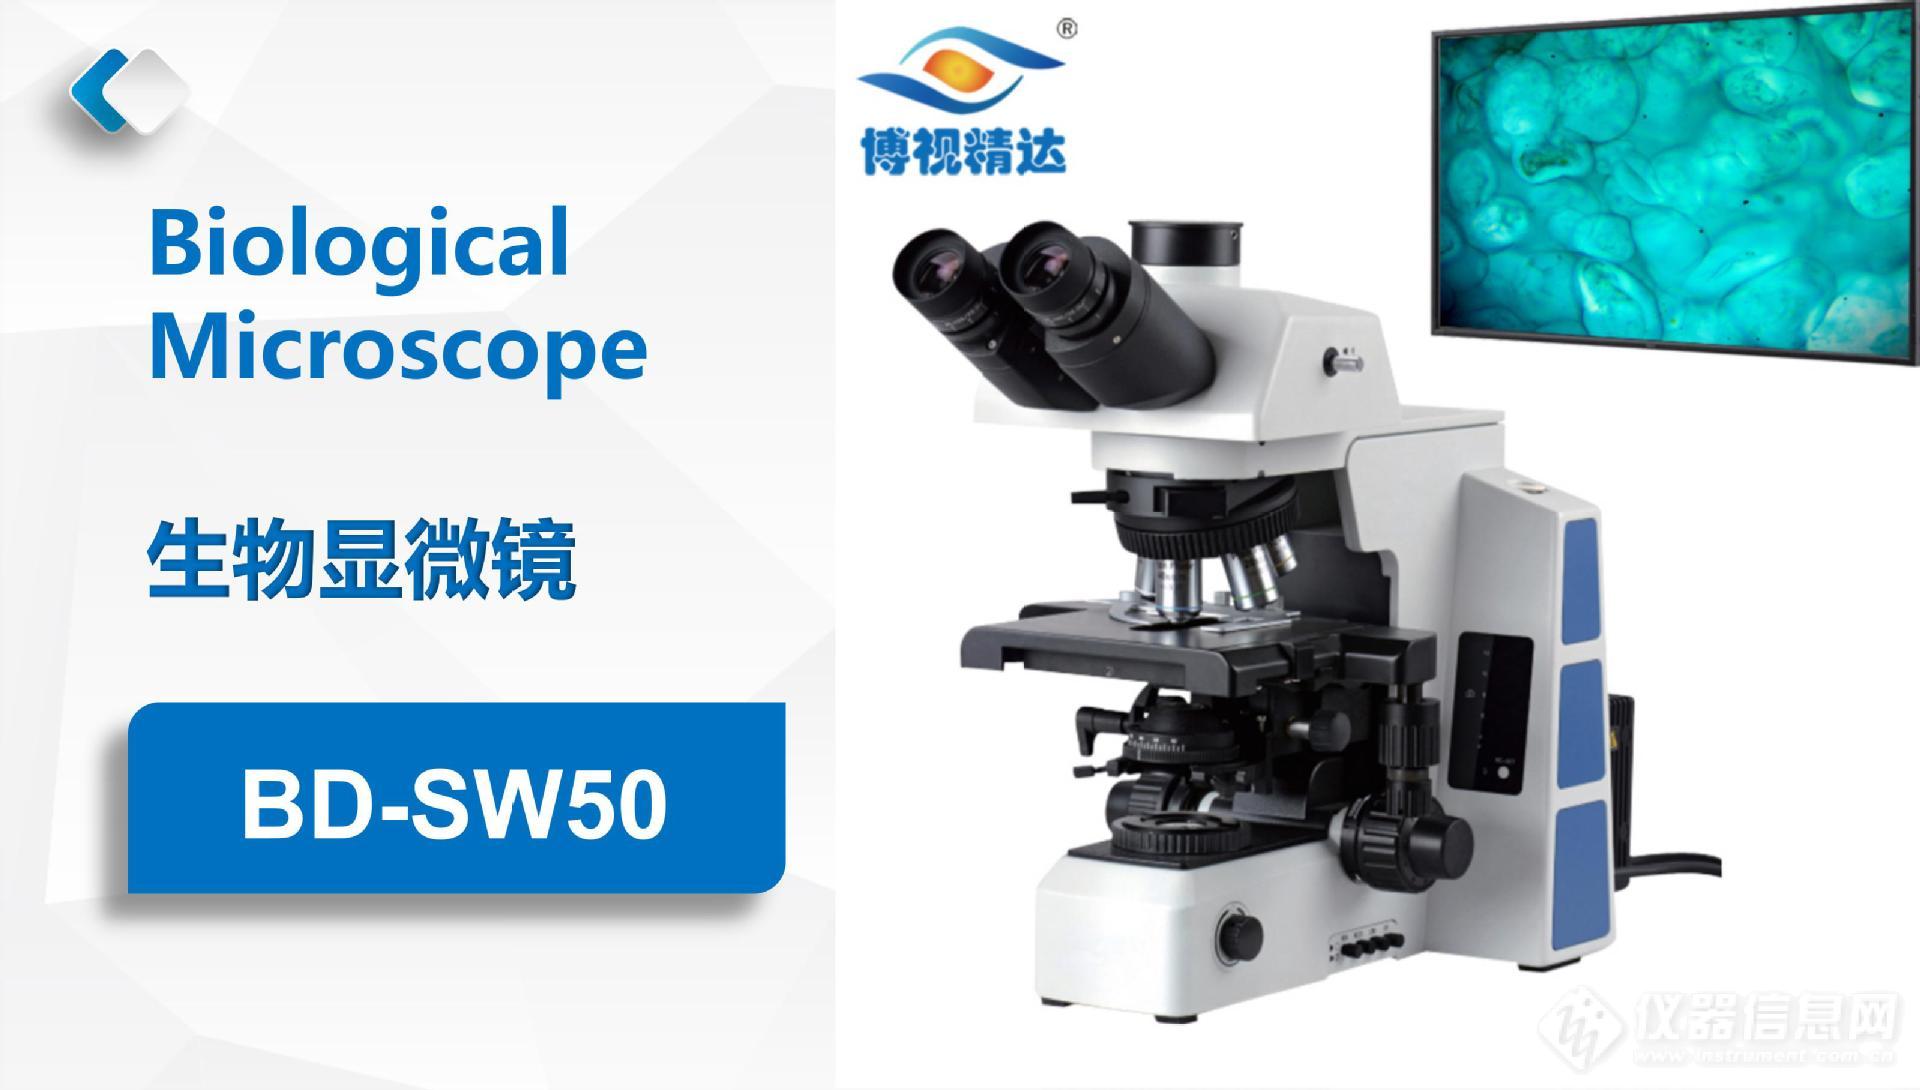 BD-SW50生物显微镜-素材2.jpg